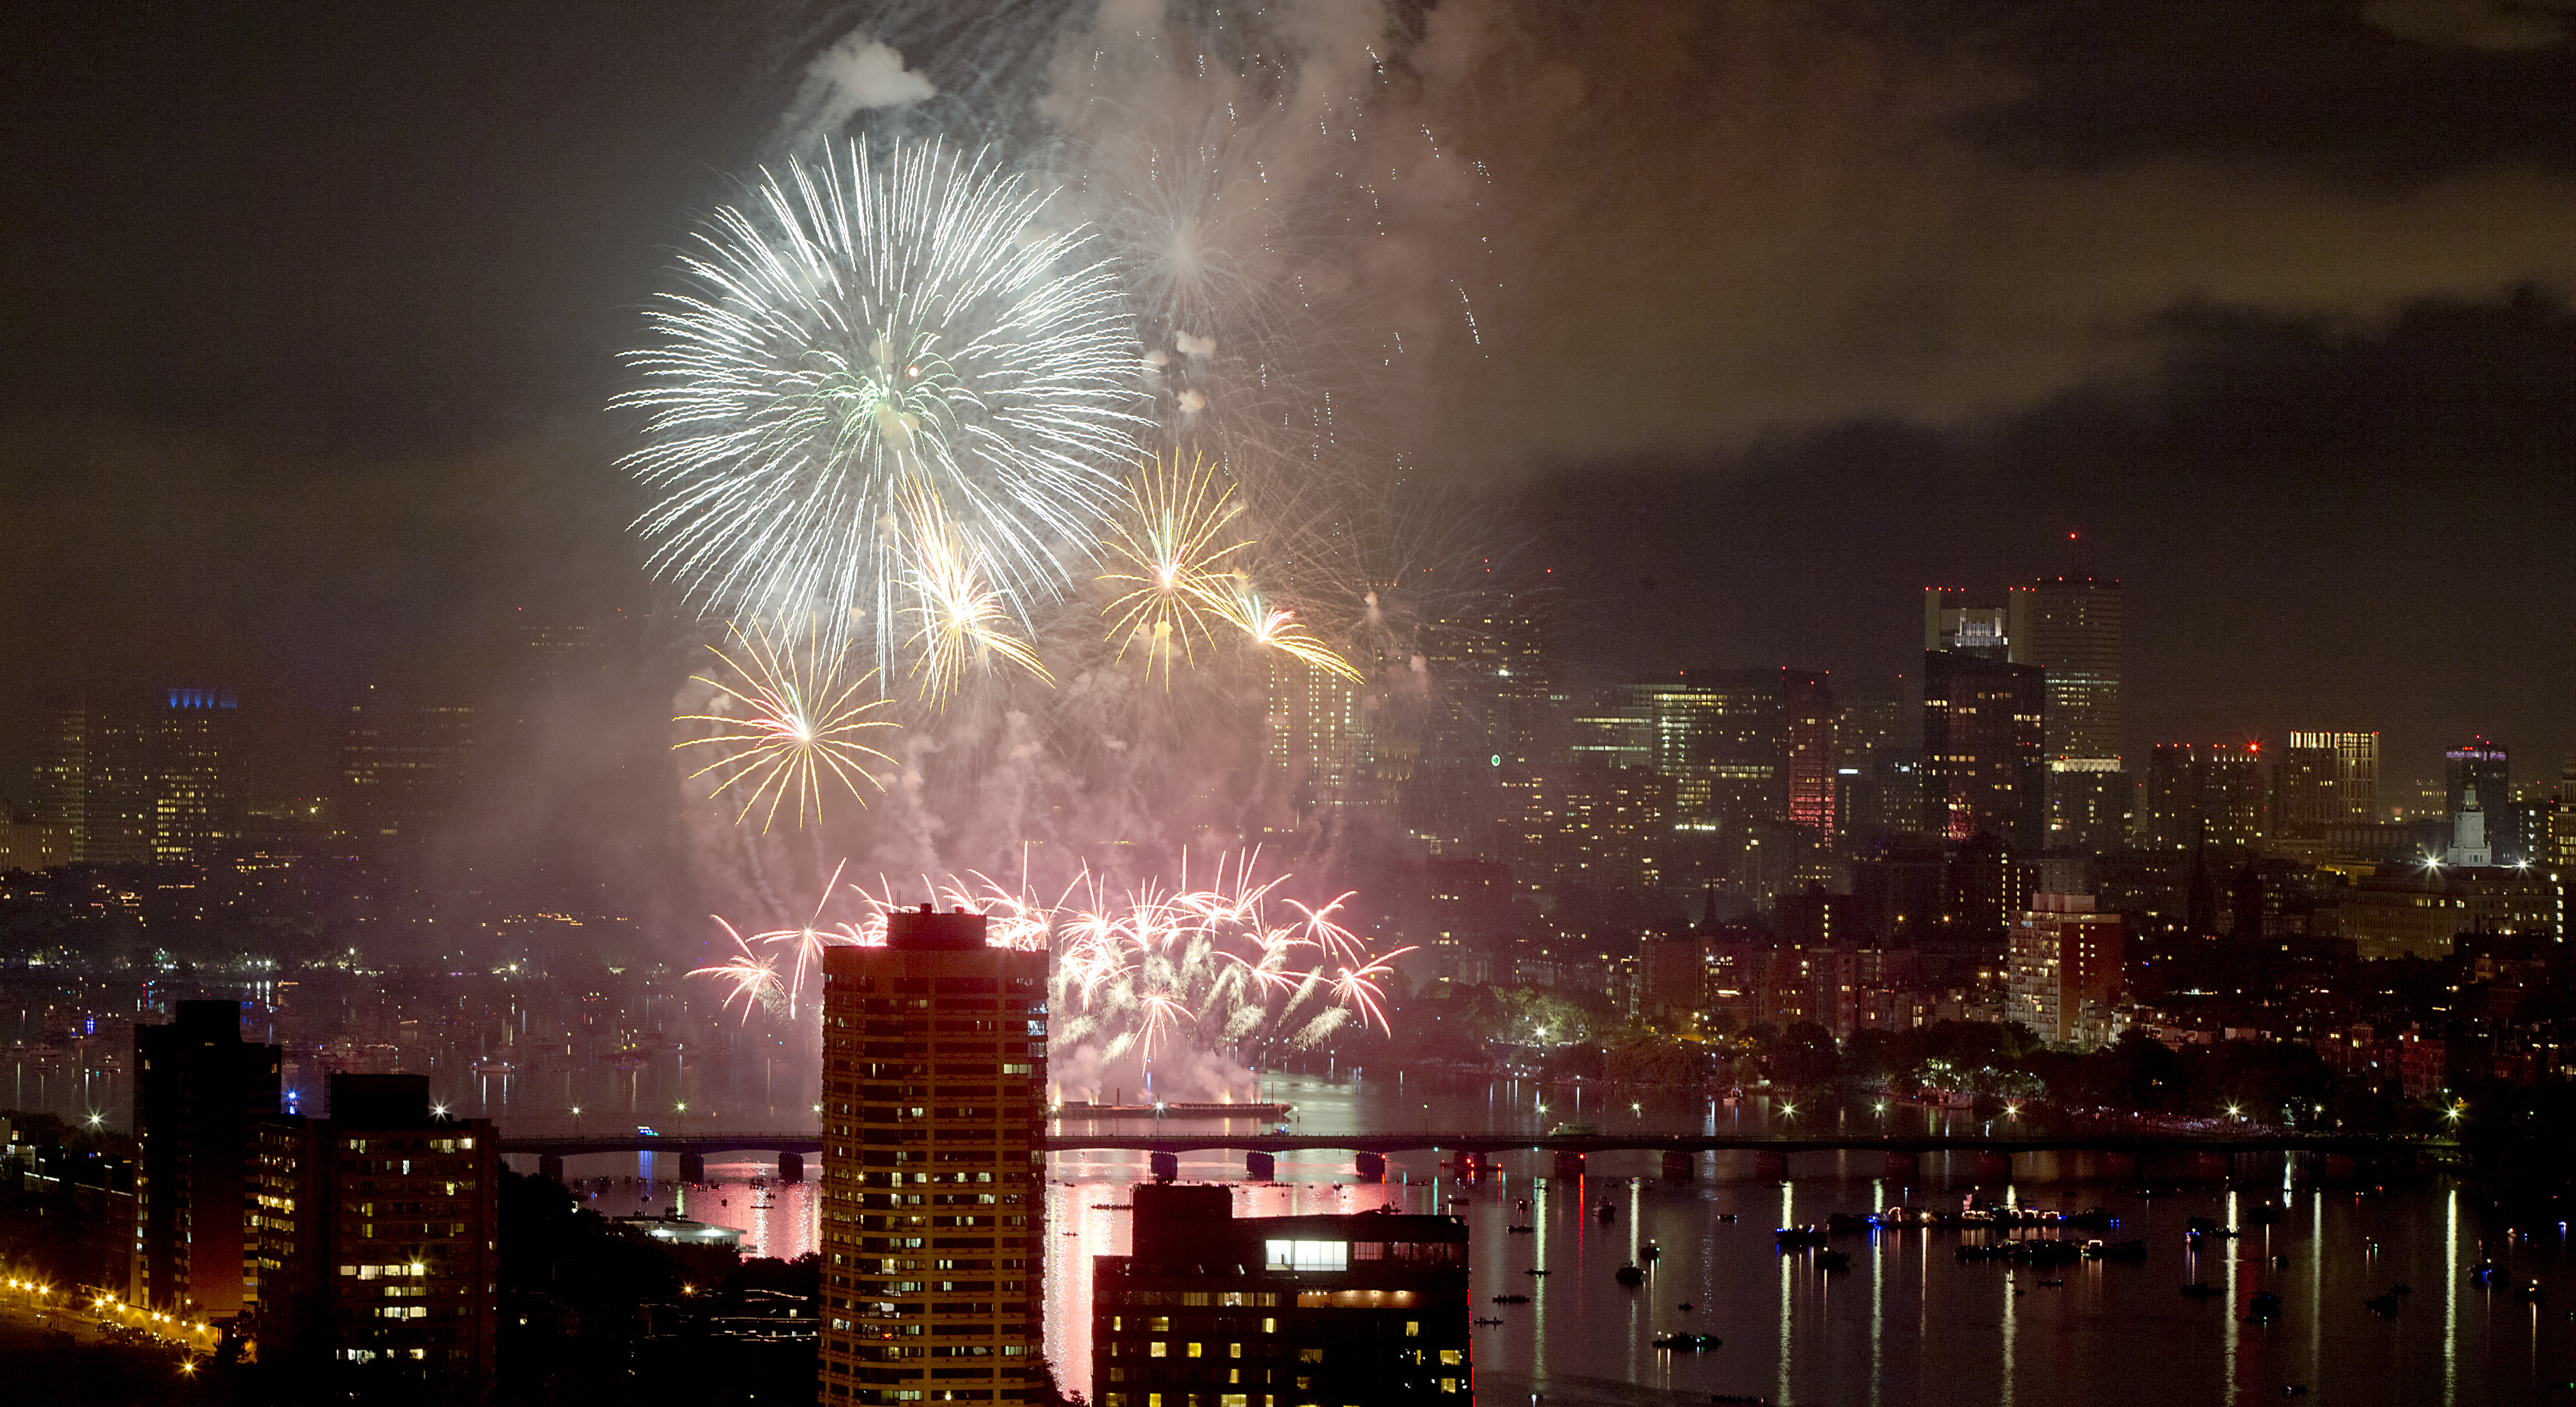 Celebrate Boston Harbor Fireworks from Nantucket Lightship LV-112